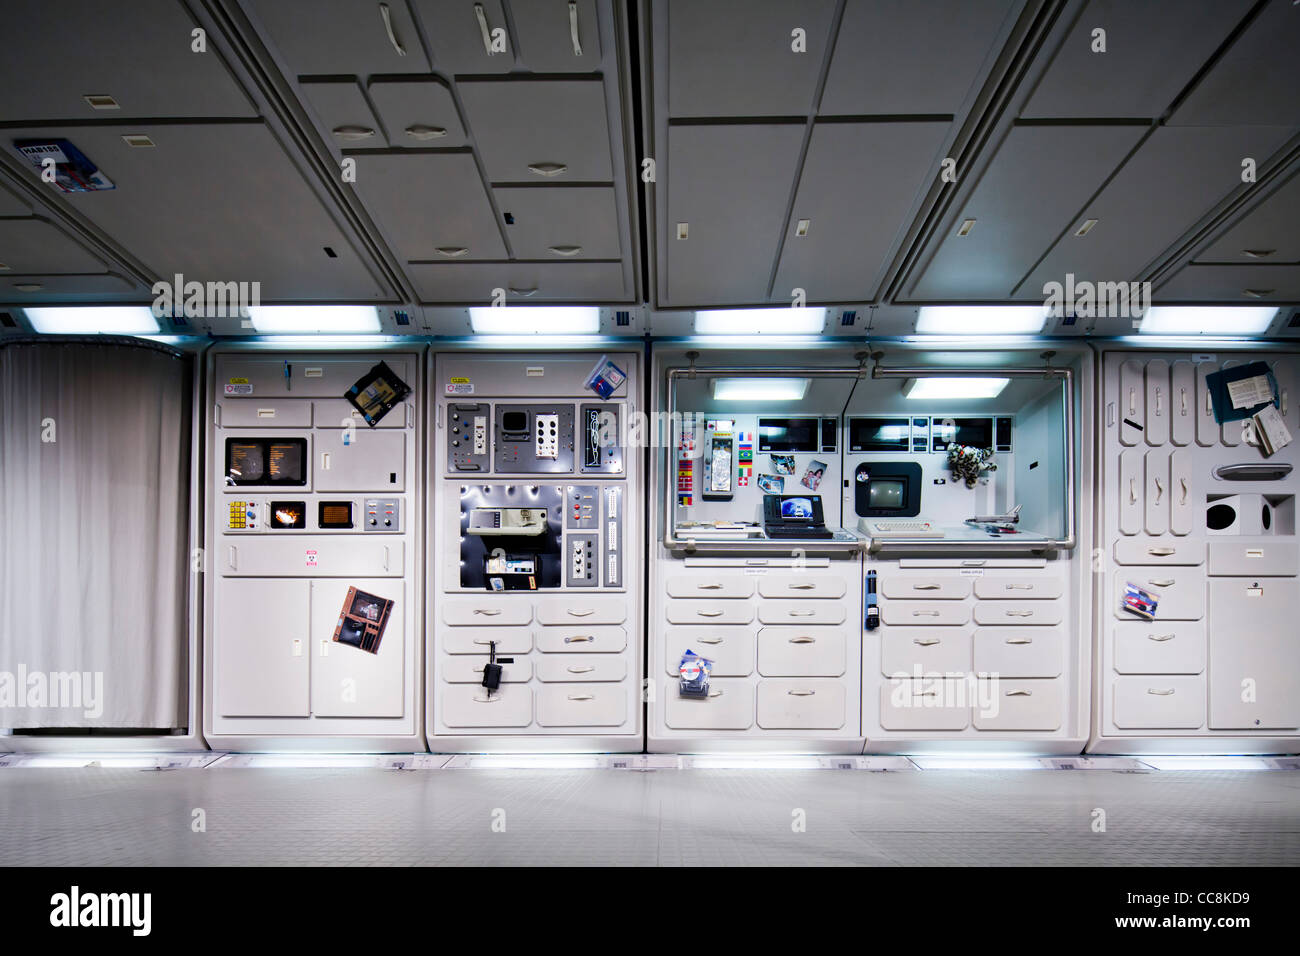 Johnson Space center, Houston, Texas Stock Photo